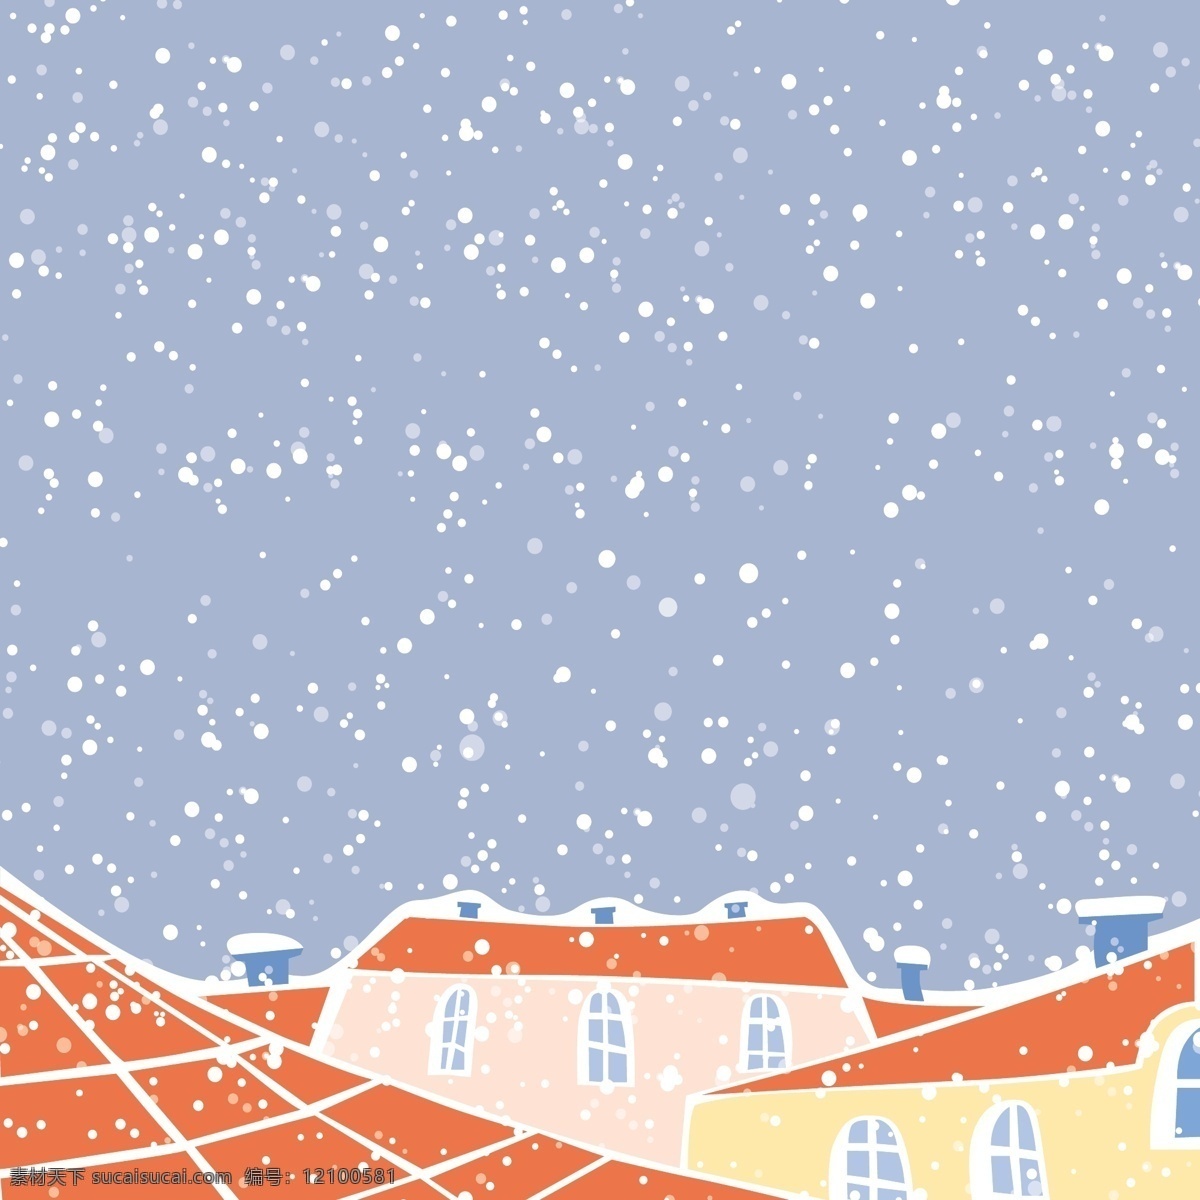 下雪 城市 插画 风景 背景 矢量 蓝天 积雪 红色 屋顶卡通 手绘